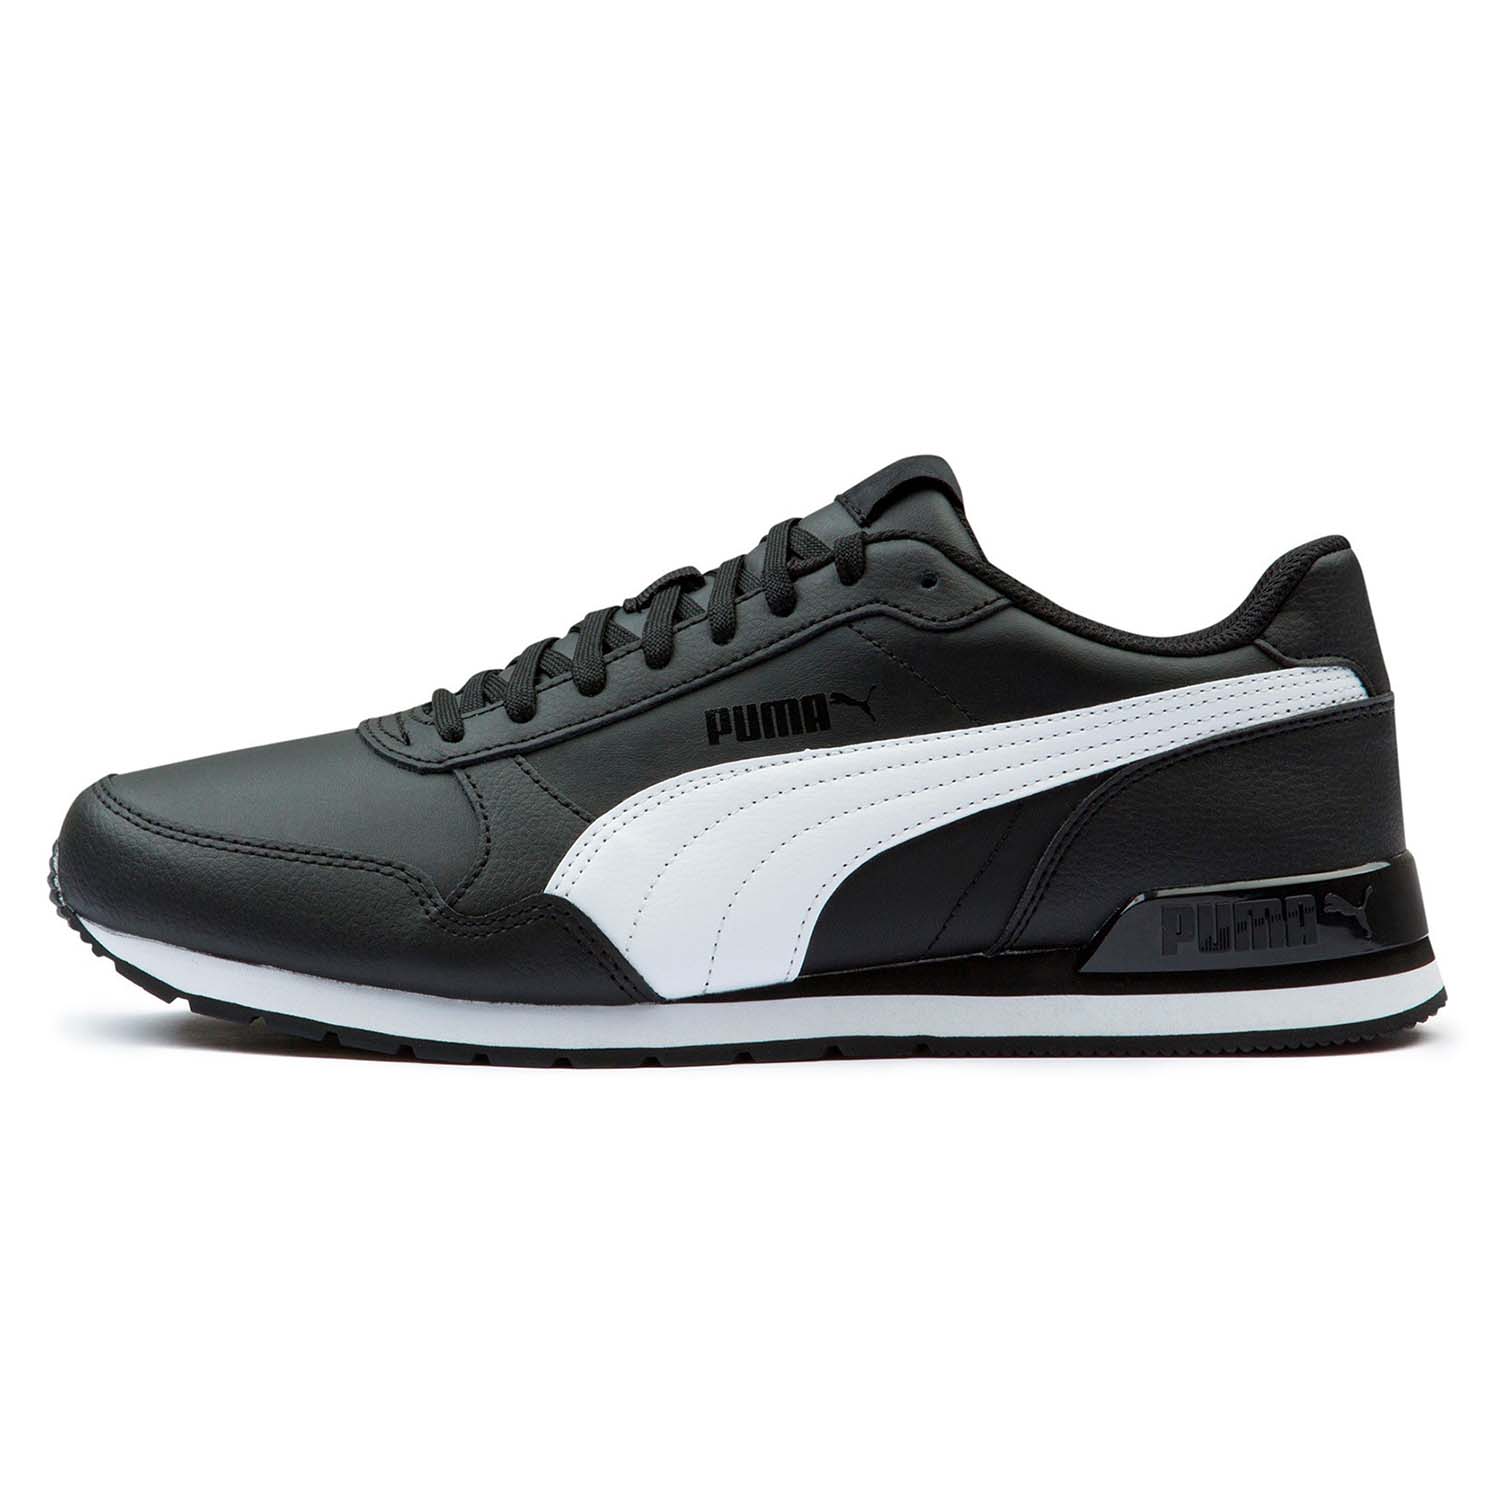 Puma Unisex-Erwachsene ST Runner V2 Full L Sneaker, Black White, 40.5 EU